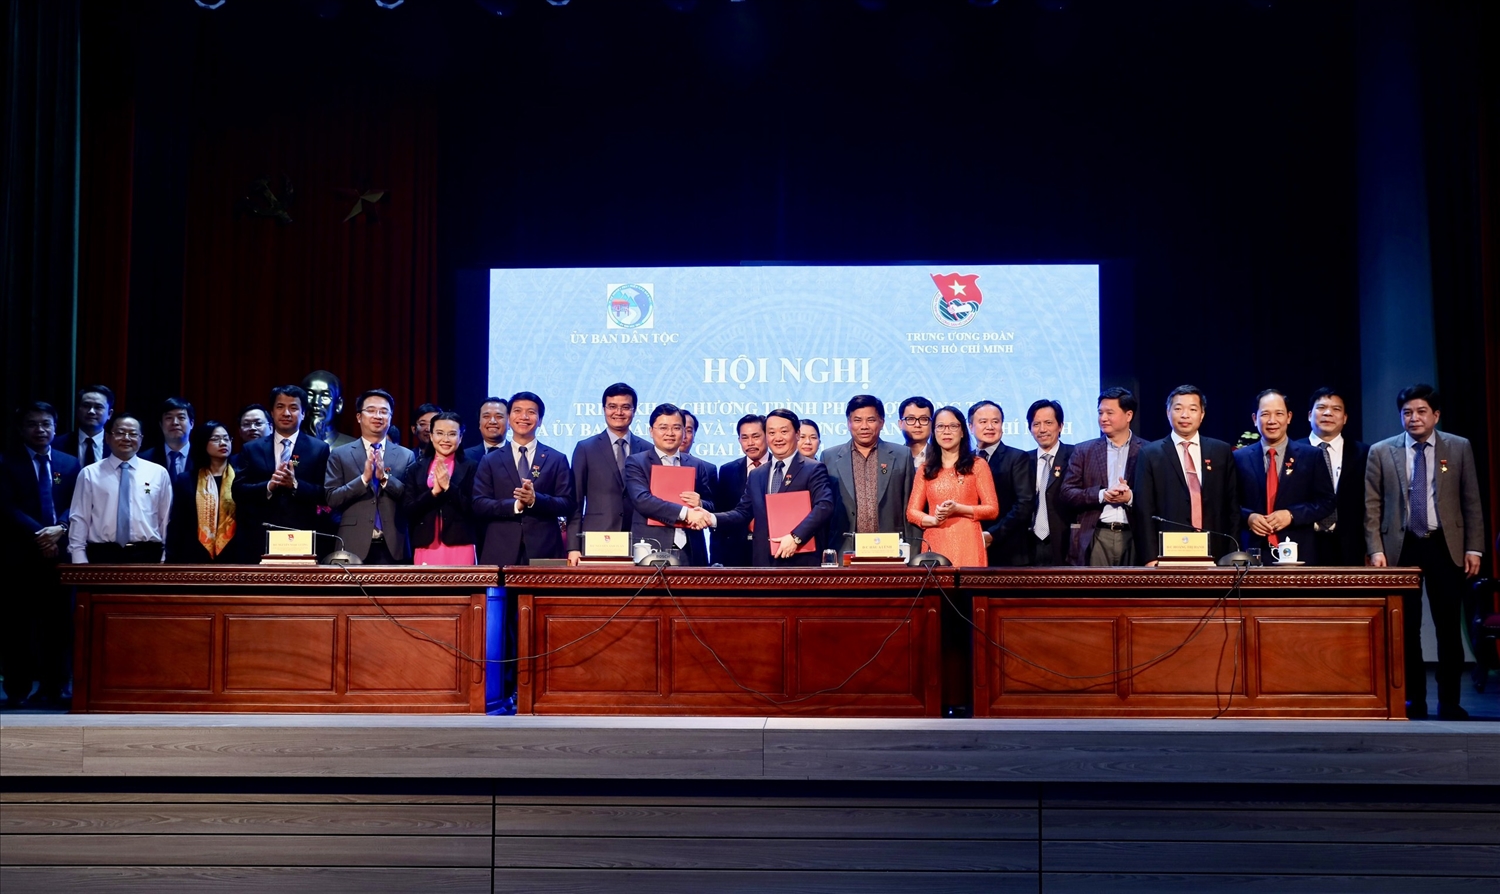 Bộ trưởng, Chủ nhiệm Hầu A Lềnh và Bí thư Thứ nhất Trung ương Đoàn TNCS Hồ Chí Minh Nguyễn Anh Tuấn đã ký kết Chương trình phối hợp công tác giữa UBDT và Trung ương Đoàn TNCS Hồ Chí Minh giai đoạn 2021 - 2025